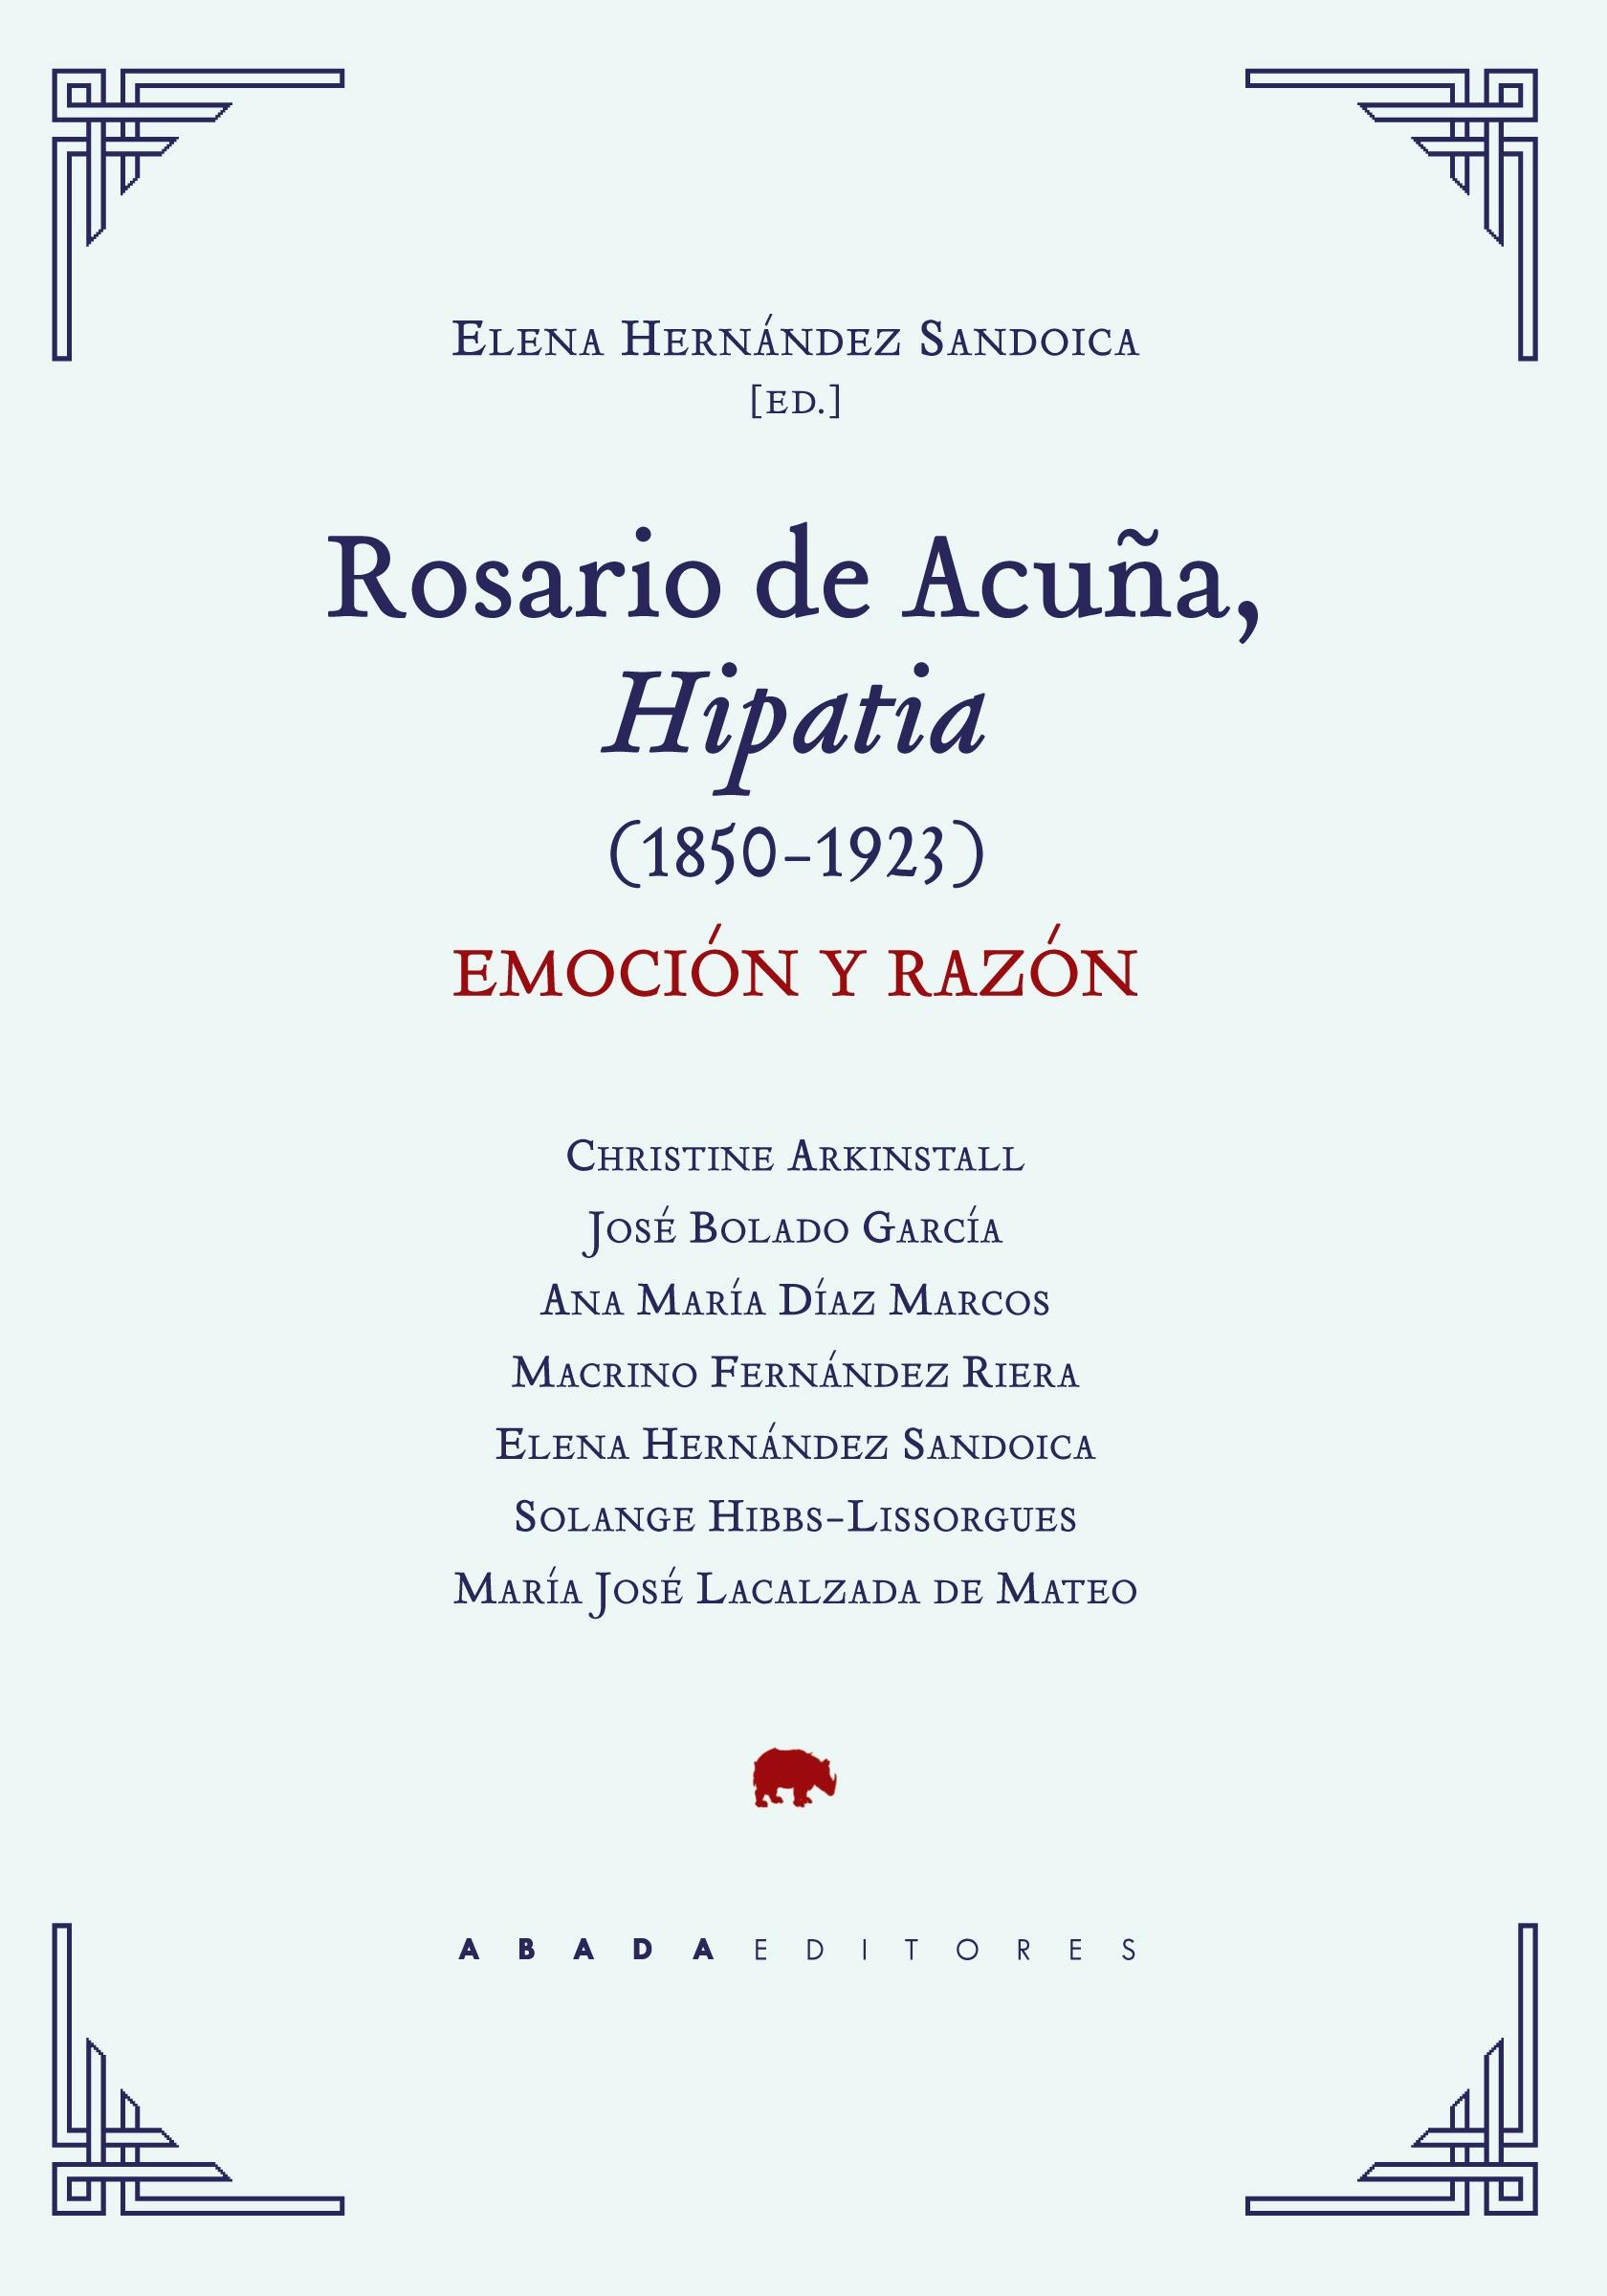 Rosario de Acuña, Hipatia (1850-1923) "Emoción y razón". 